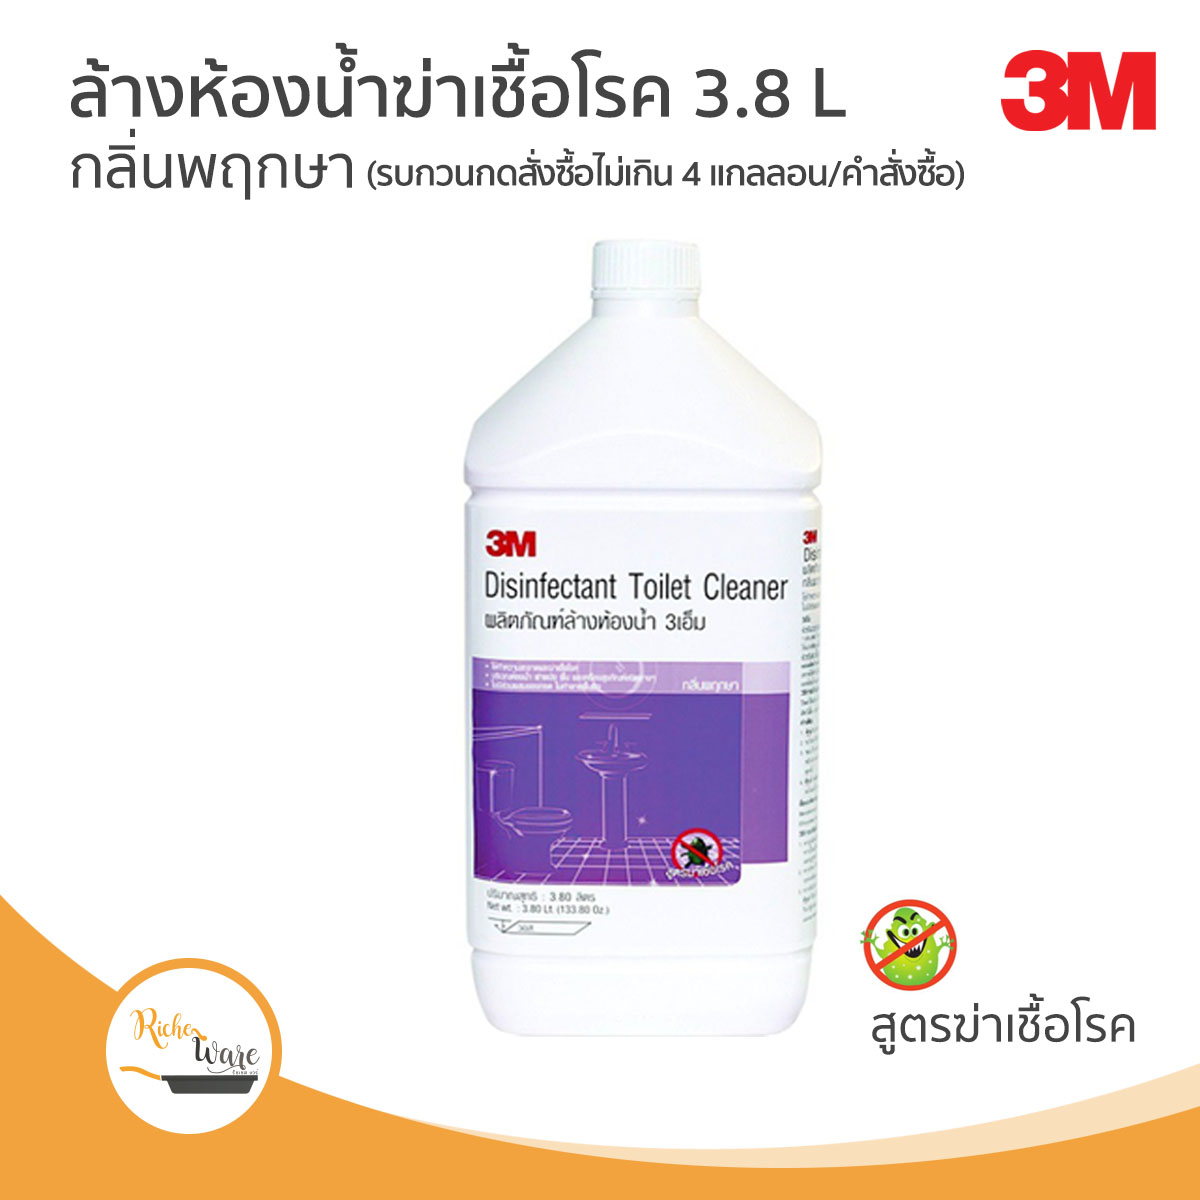 3M ผลิตภัณฑ์ล้างห้องน้ำฆ่าเชื้อโรค กลิ่นพฤกษา ขนาด 3.8 ลิตร 3M DISINFECTANT TOILET CLEANER (FLORAL)